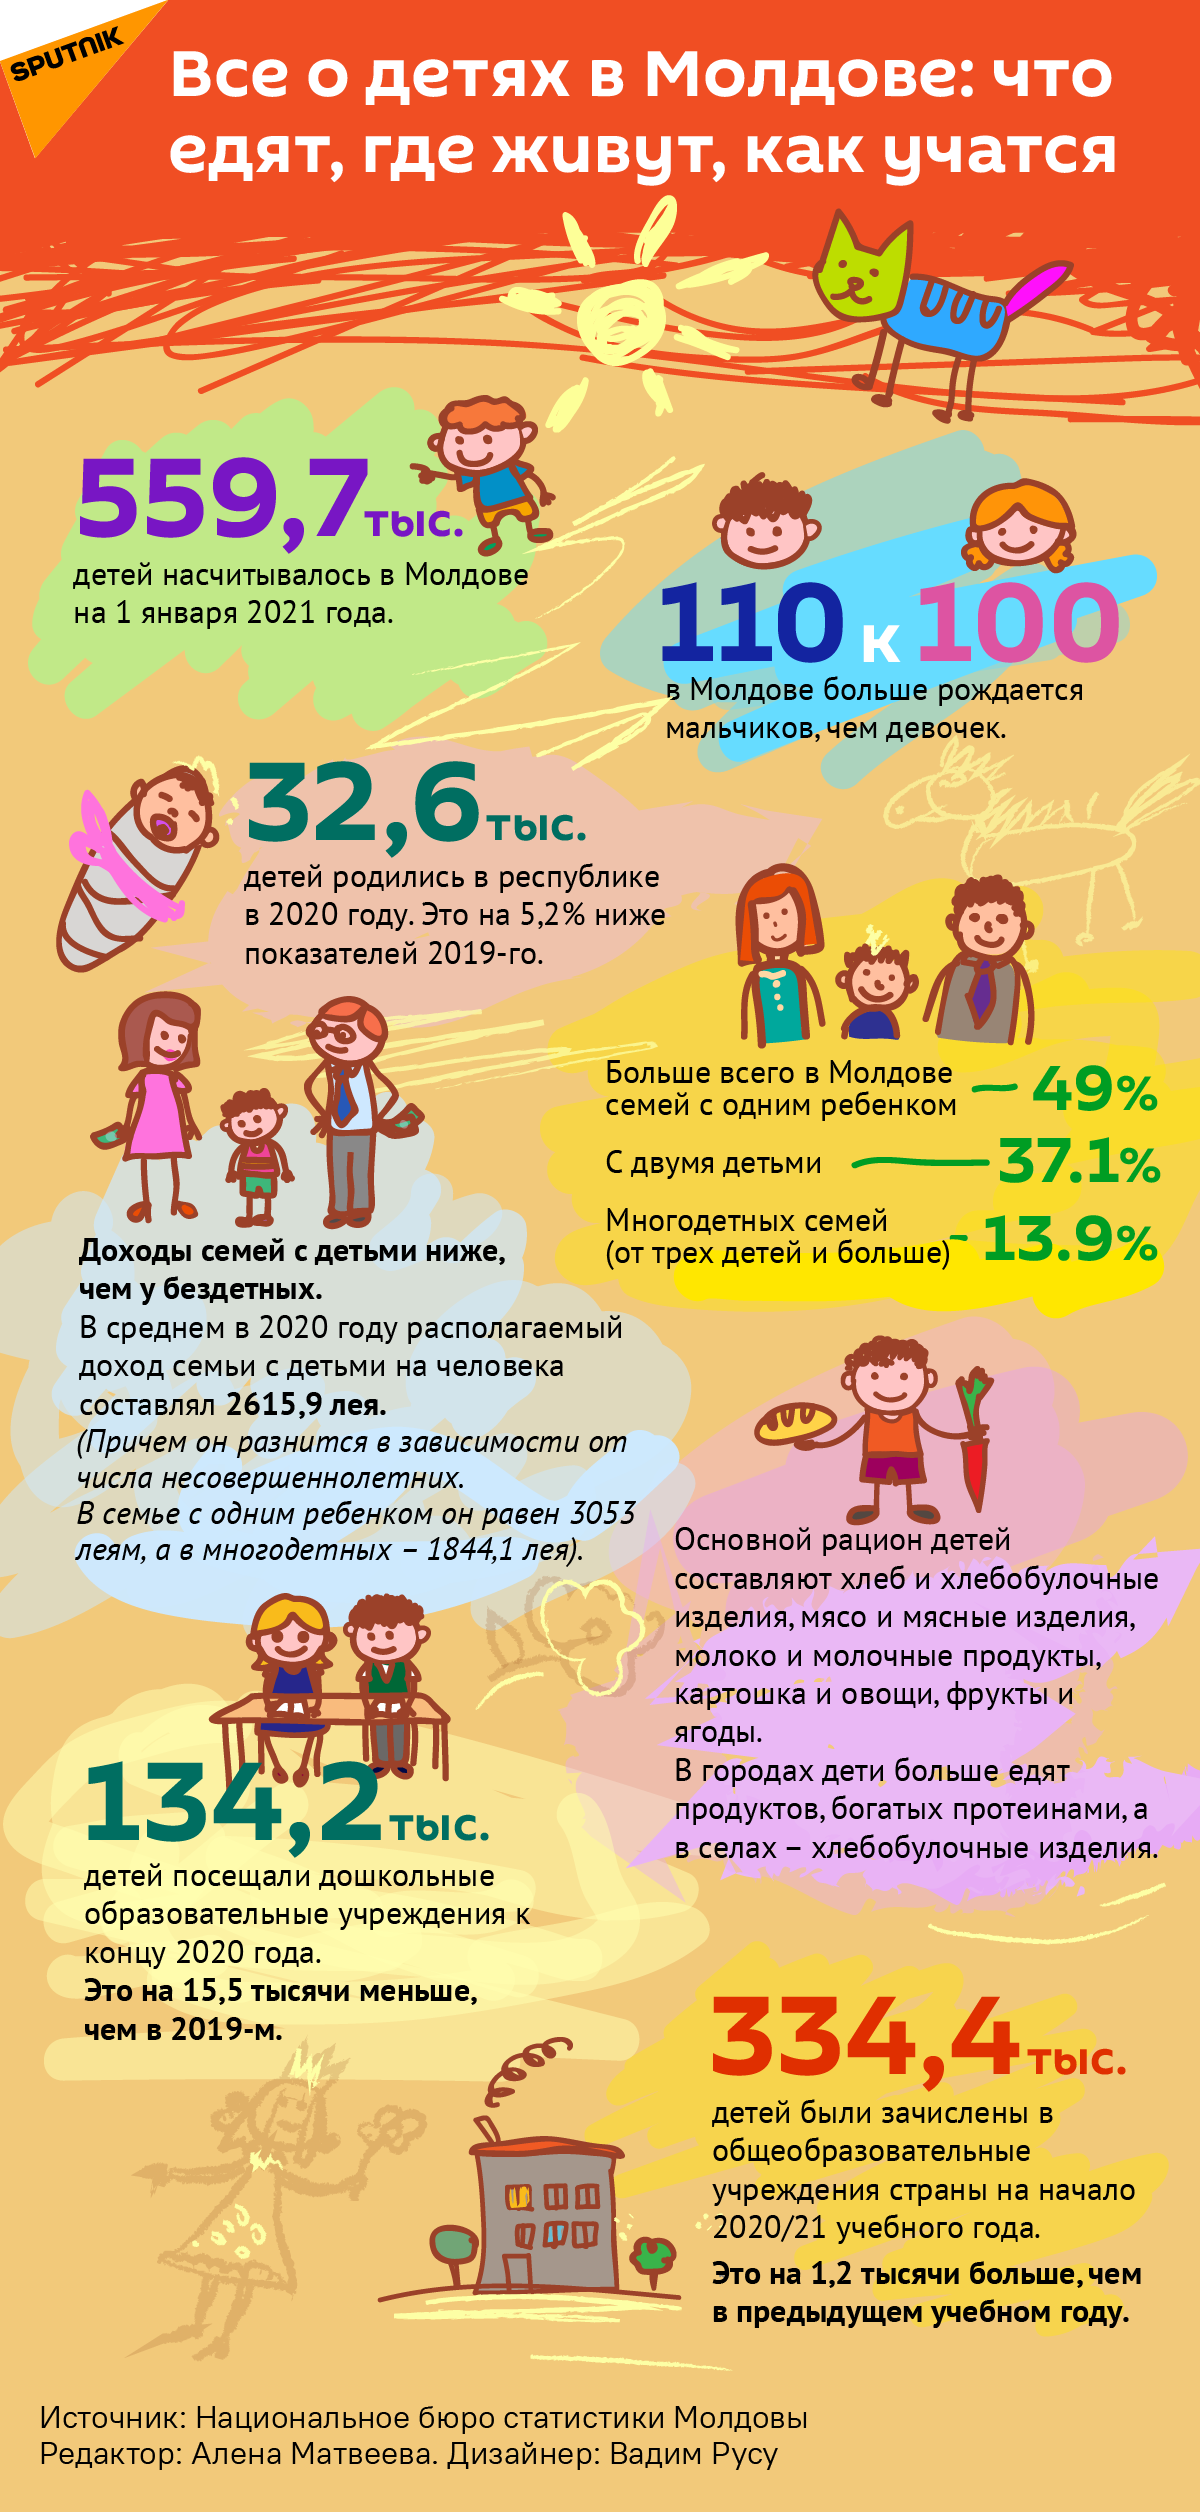 Все о детях в Молдове: что едят, где живут, как учатся - Sputnik Молдова, 1920, 01.06.2021